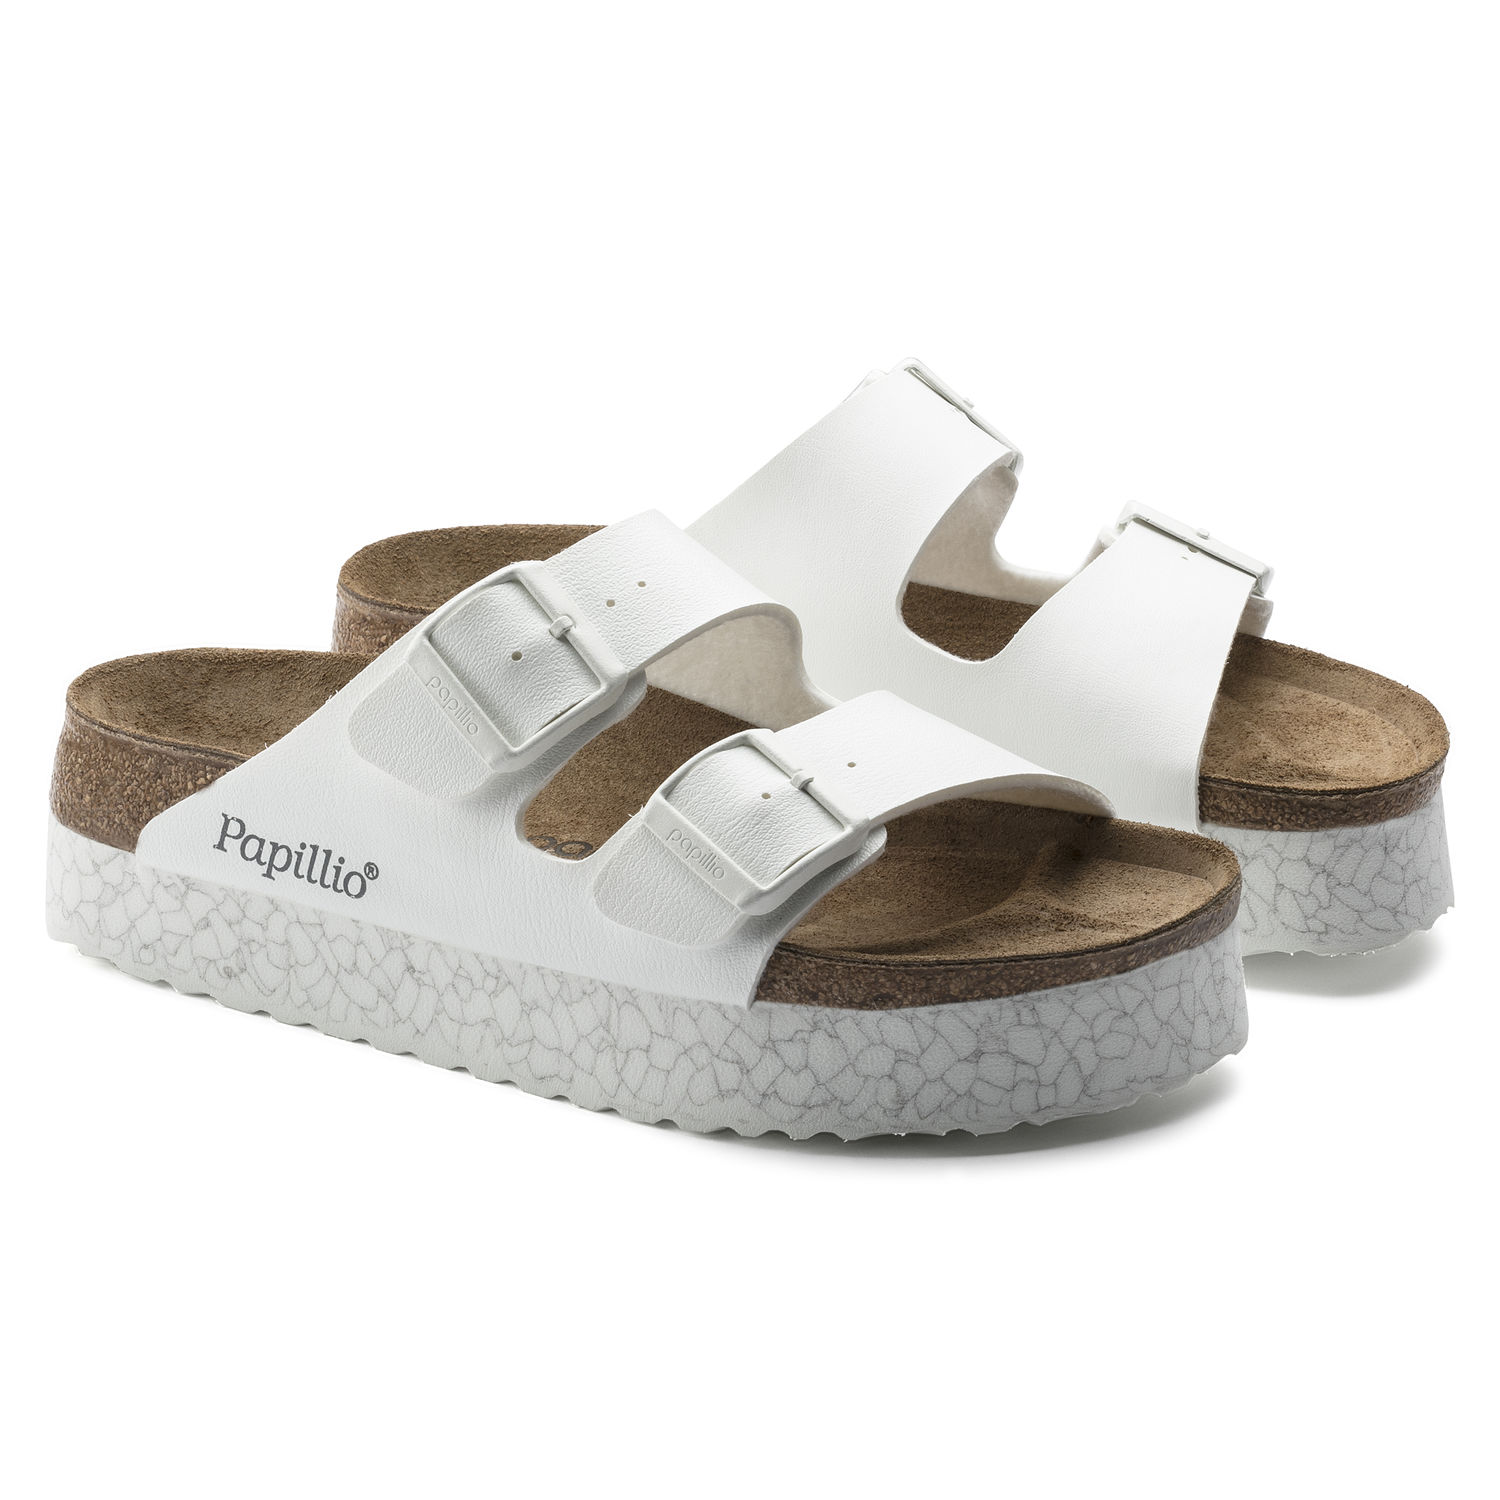 papillio women's sandals